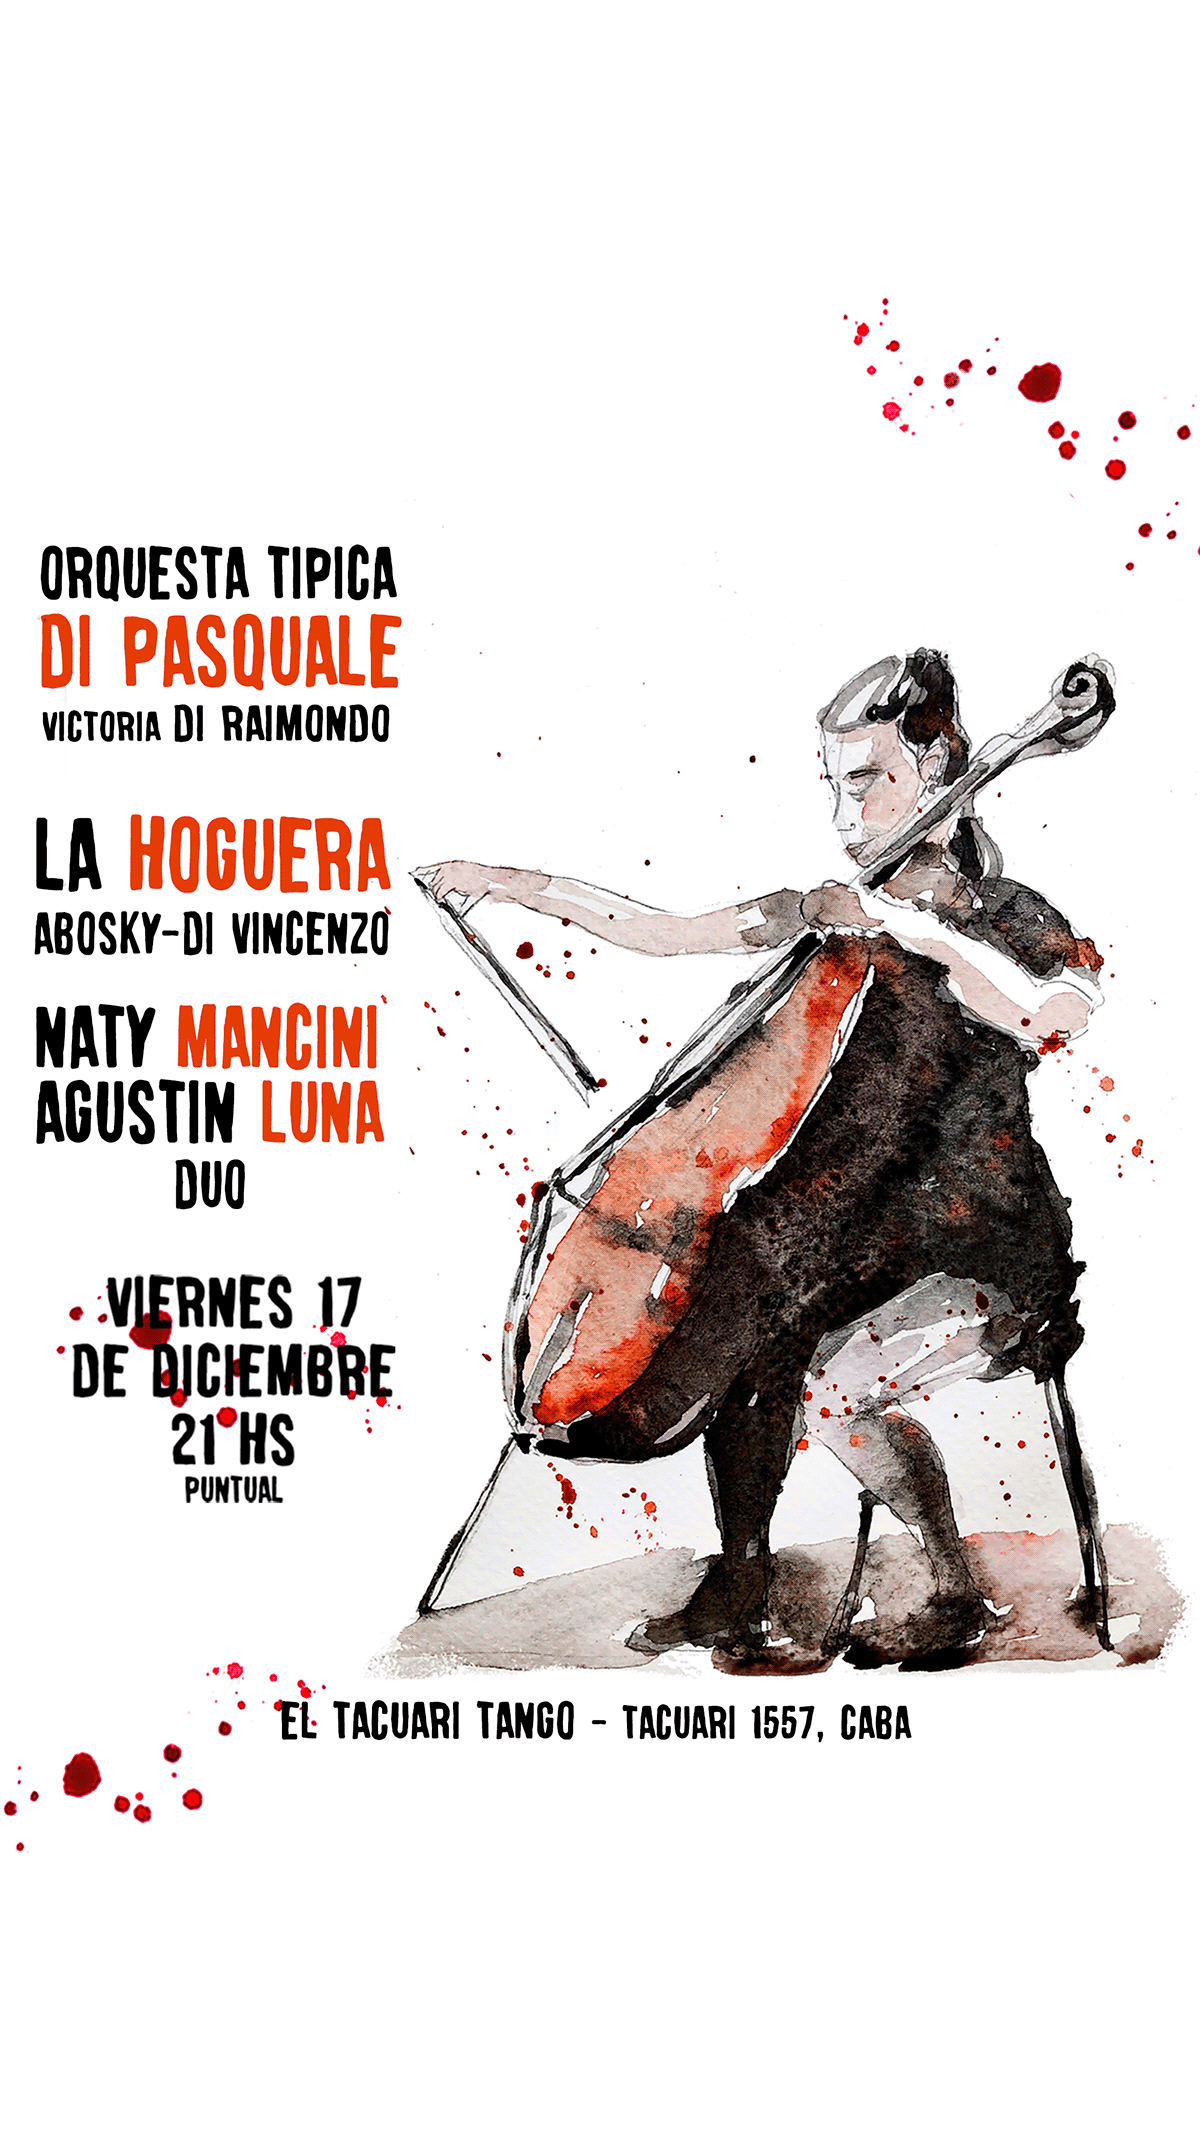 acuarela buenos aires cello musician orchestra Orquesta Típica tango tipical orchestra Violin violoncello